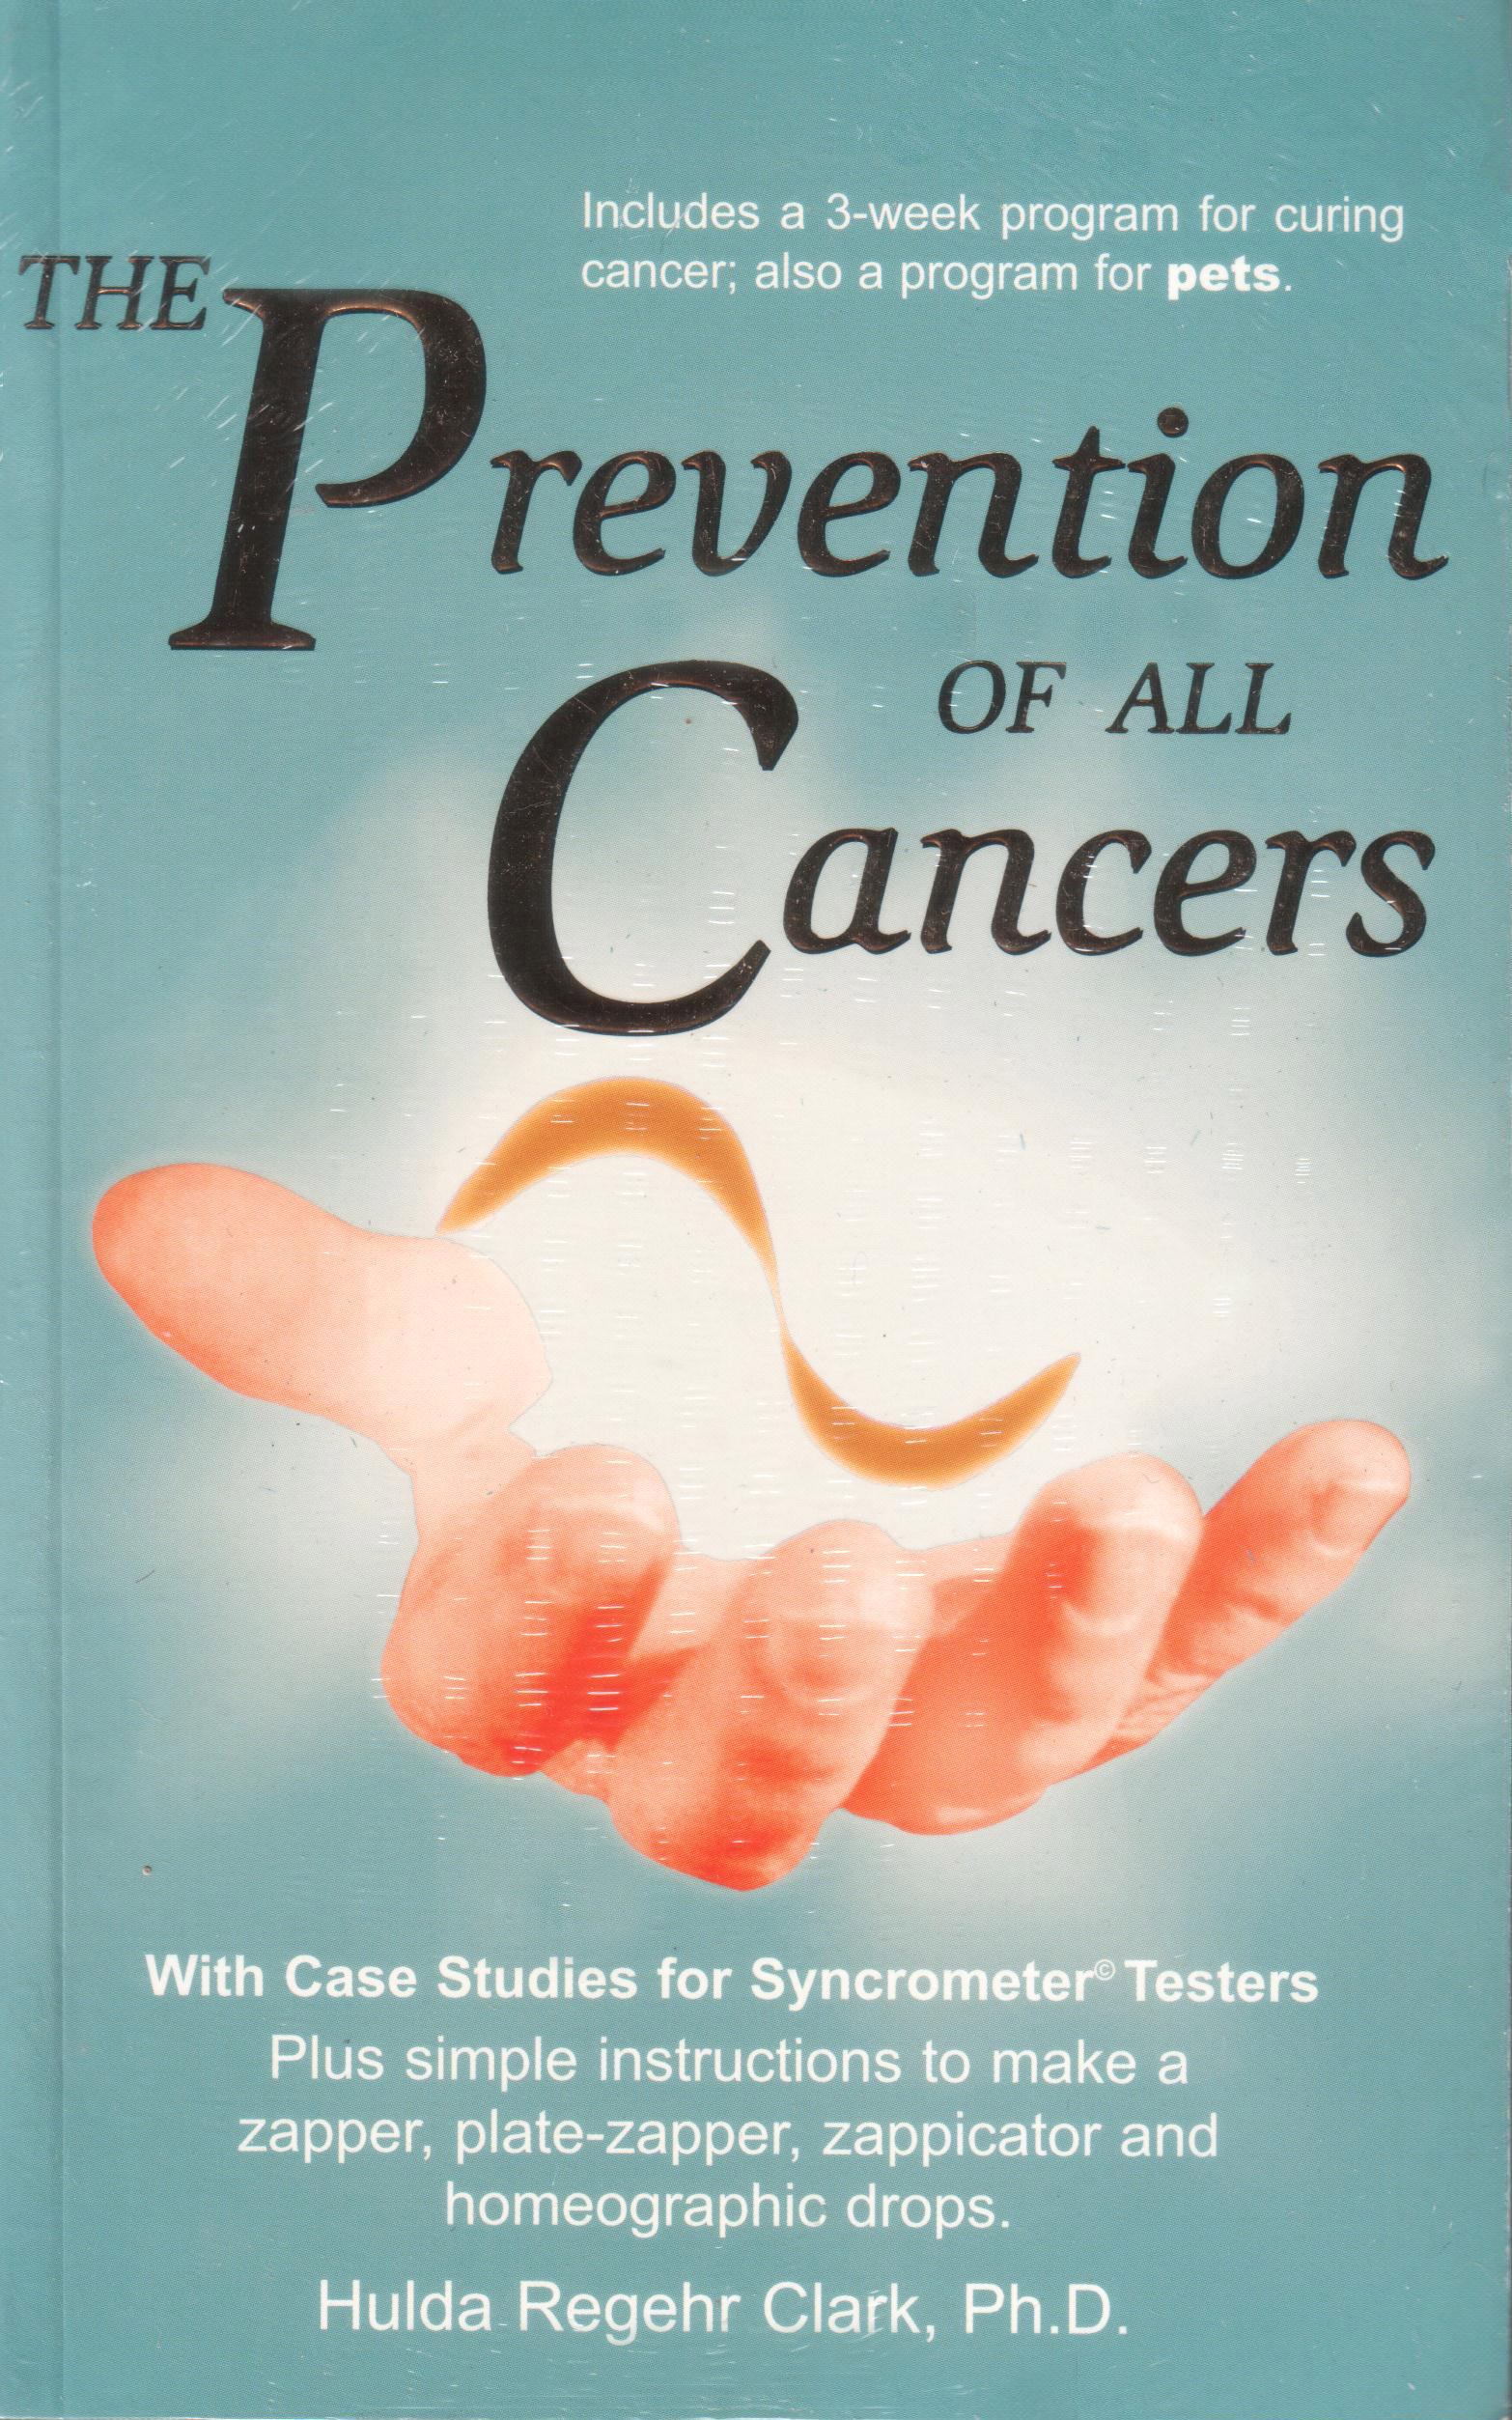 Prevention of all cancers von Hulda Clark auf englisch